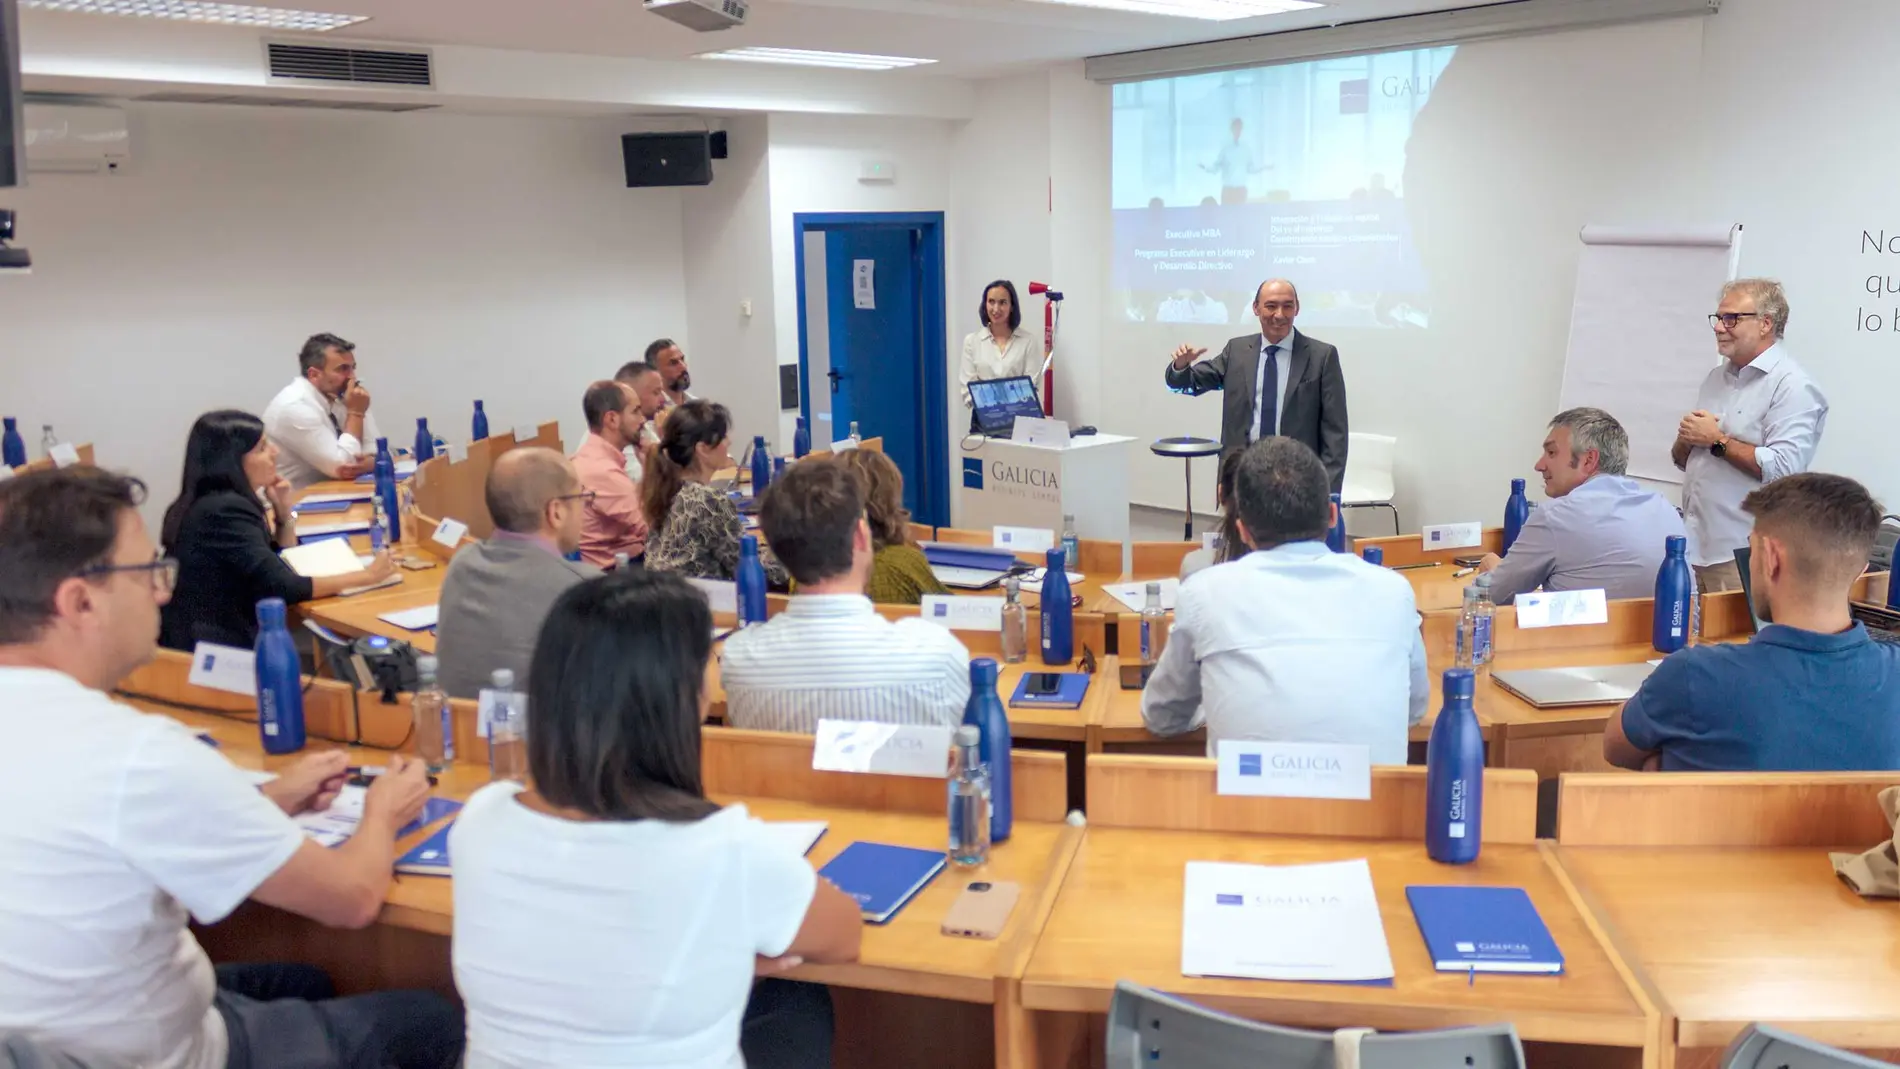 Galicia Business School cuenta con un sistema 100% híbrido de presencia digital que plena interacción con los profesores y compañeros que están en el aula